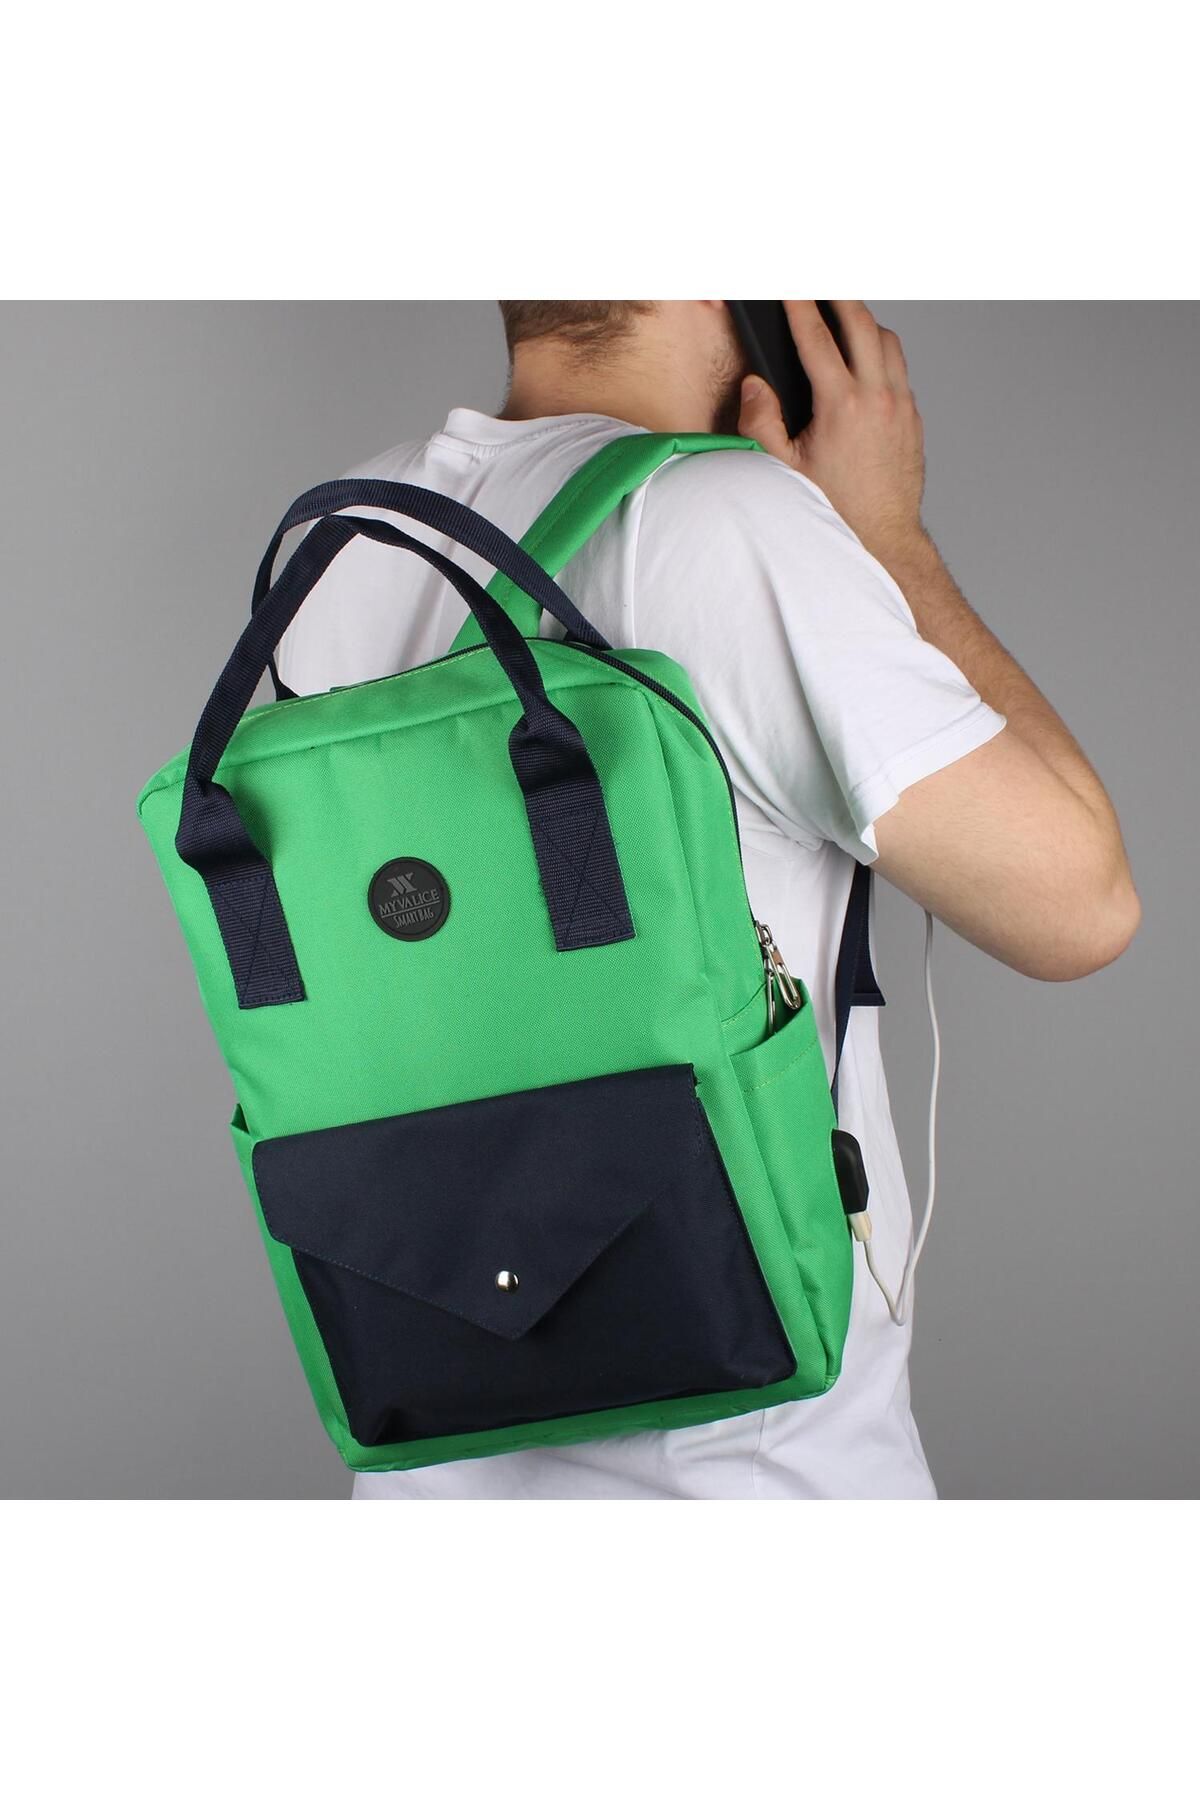 My Valice Smart Bag Post Usb Şarj Girişli Laptop Bölmeli Notebook Sırt Çantası Benetton Yeşili